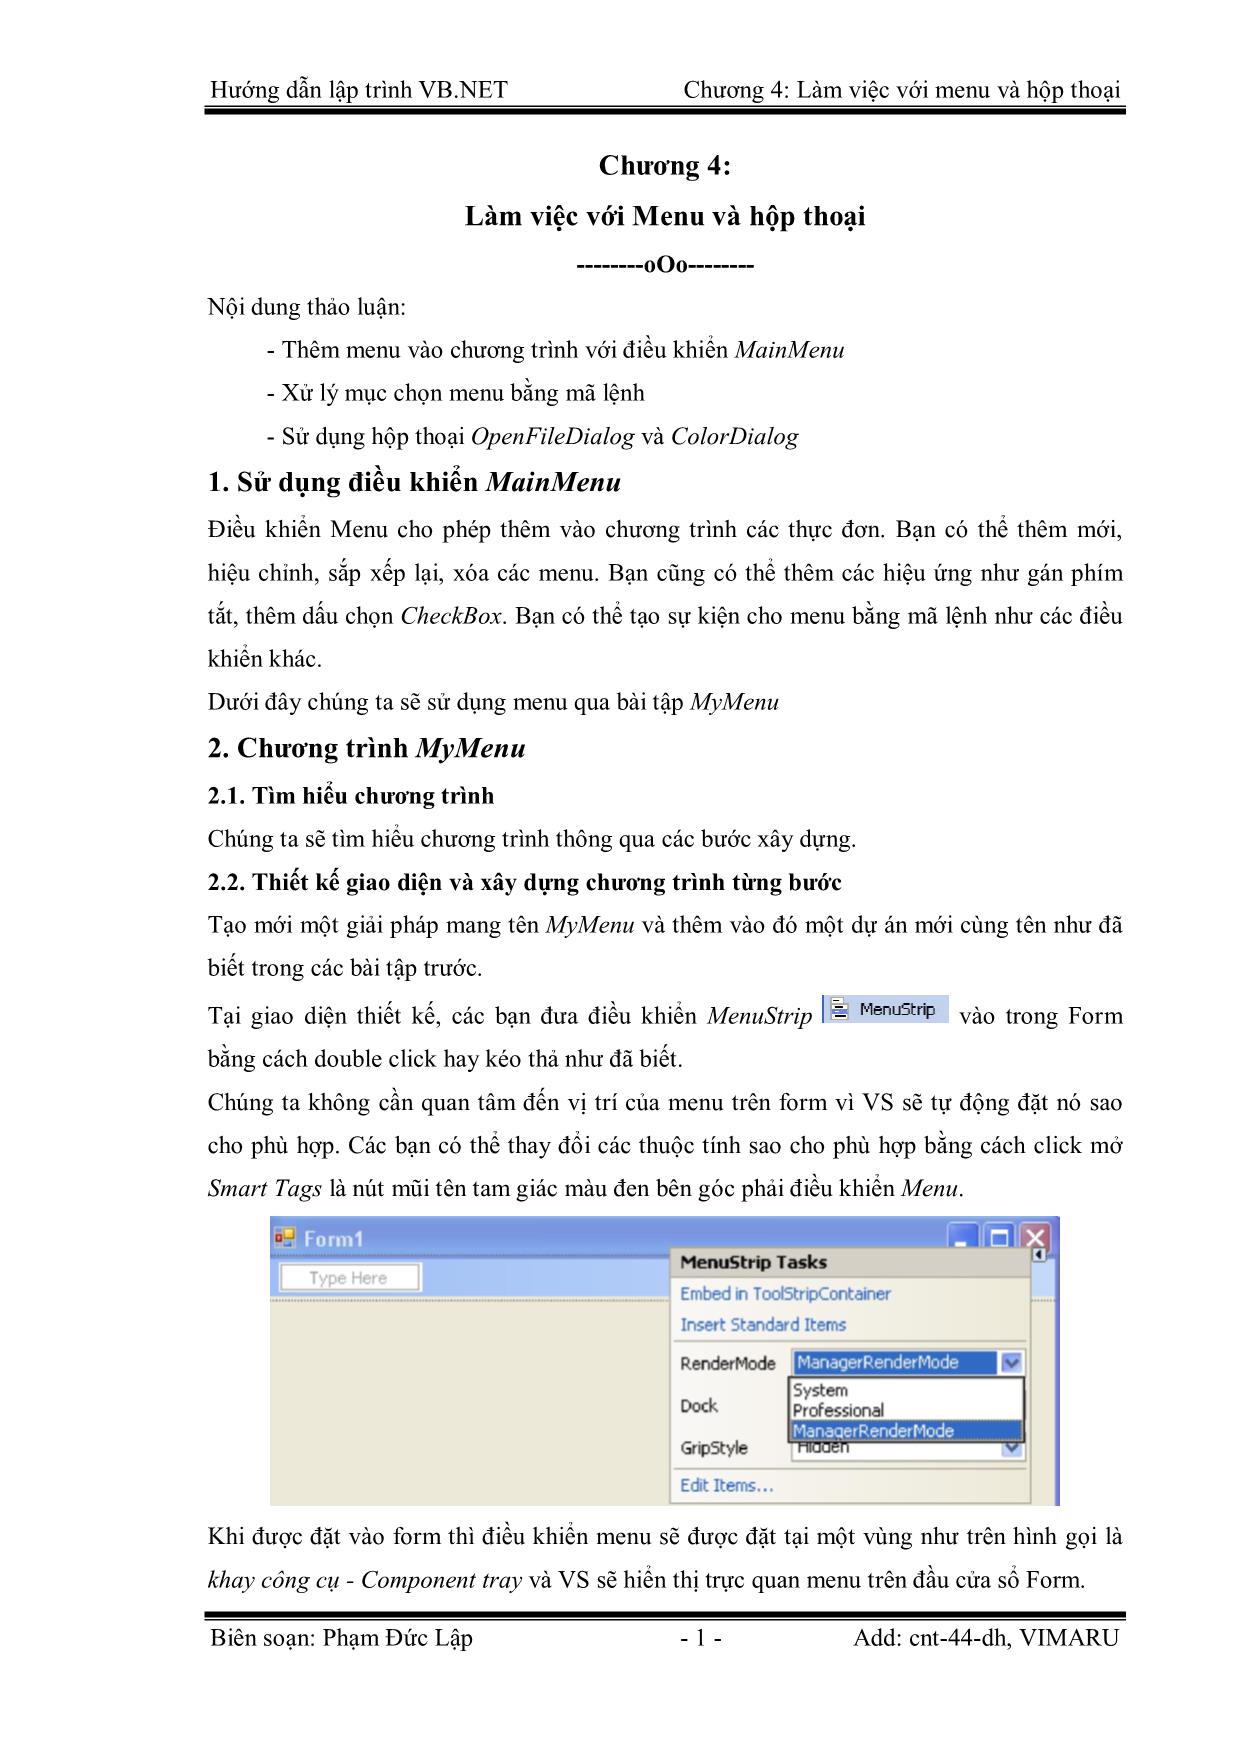 Giáo trình Hướng dẫn lập trình VB.NET - Chương 4: Làm việc với Menu và hộp thoại - Phạm Đức Lập trang 1